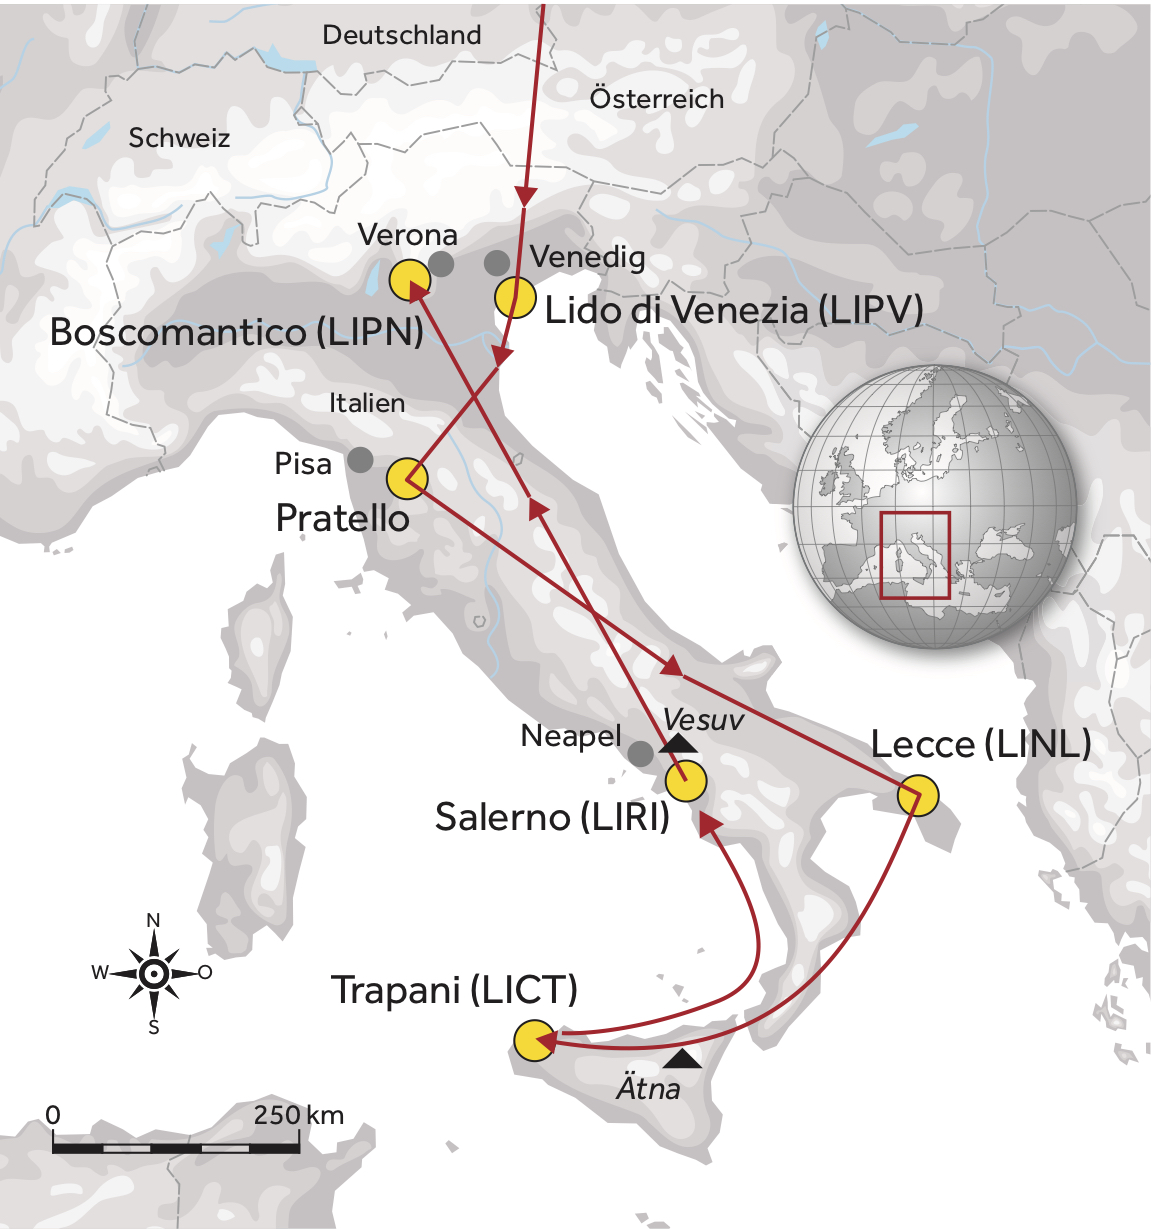 Die geplante Route durch Italien